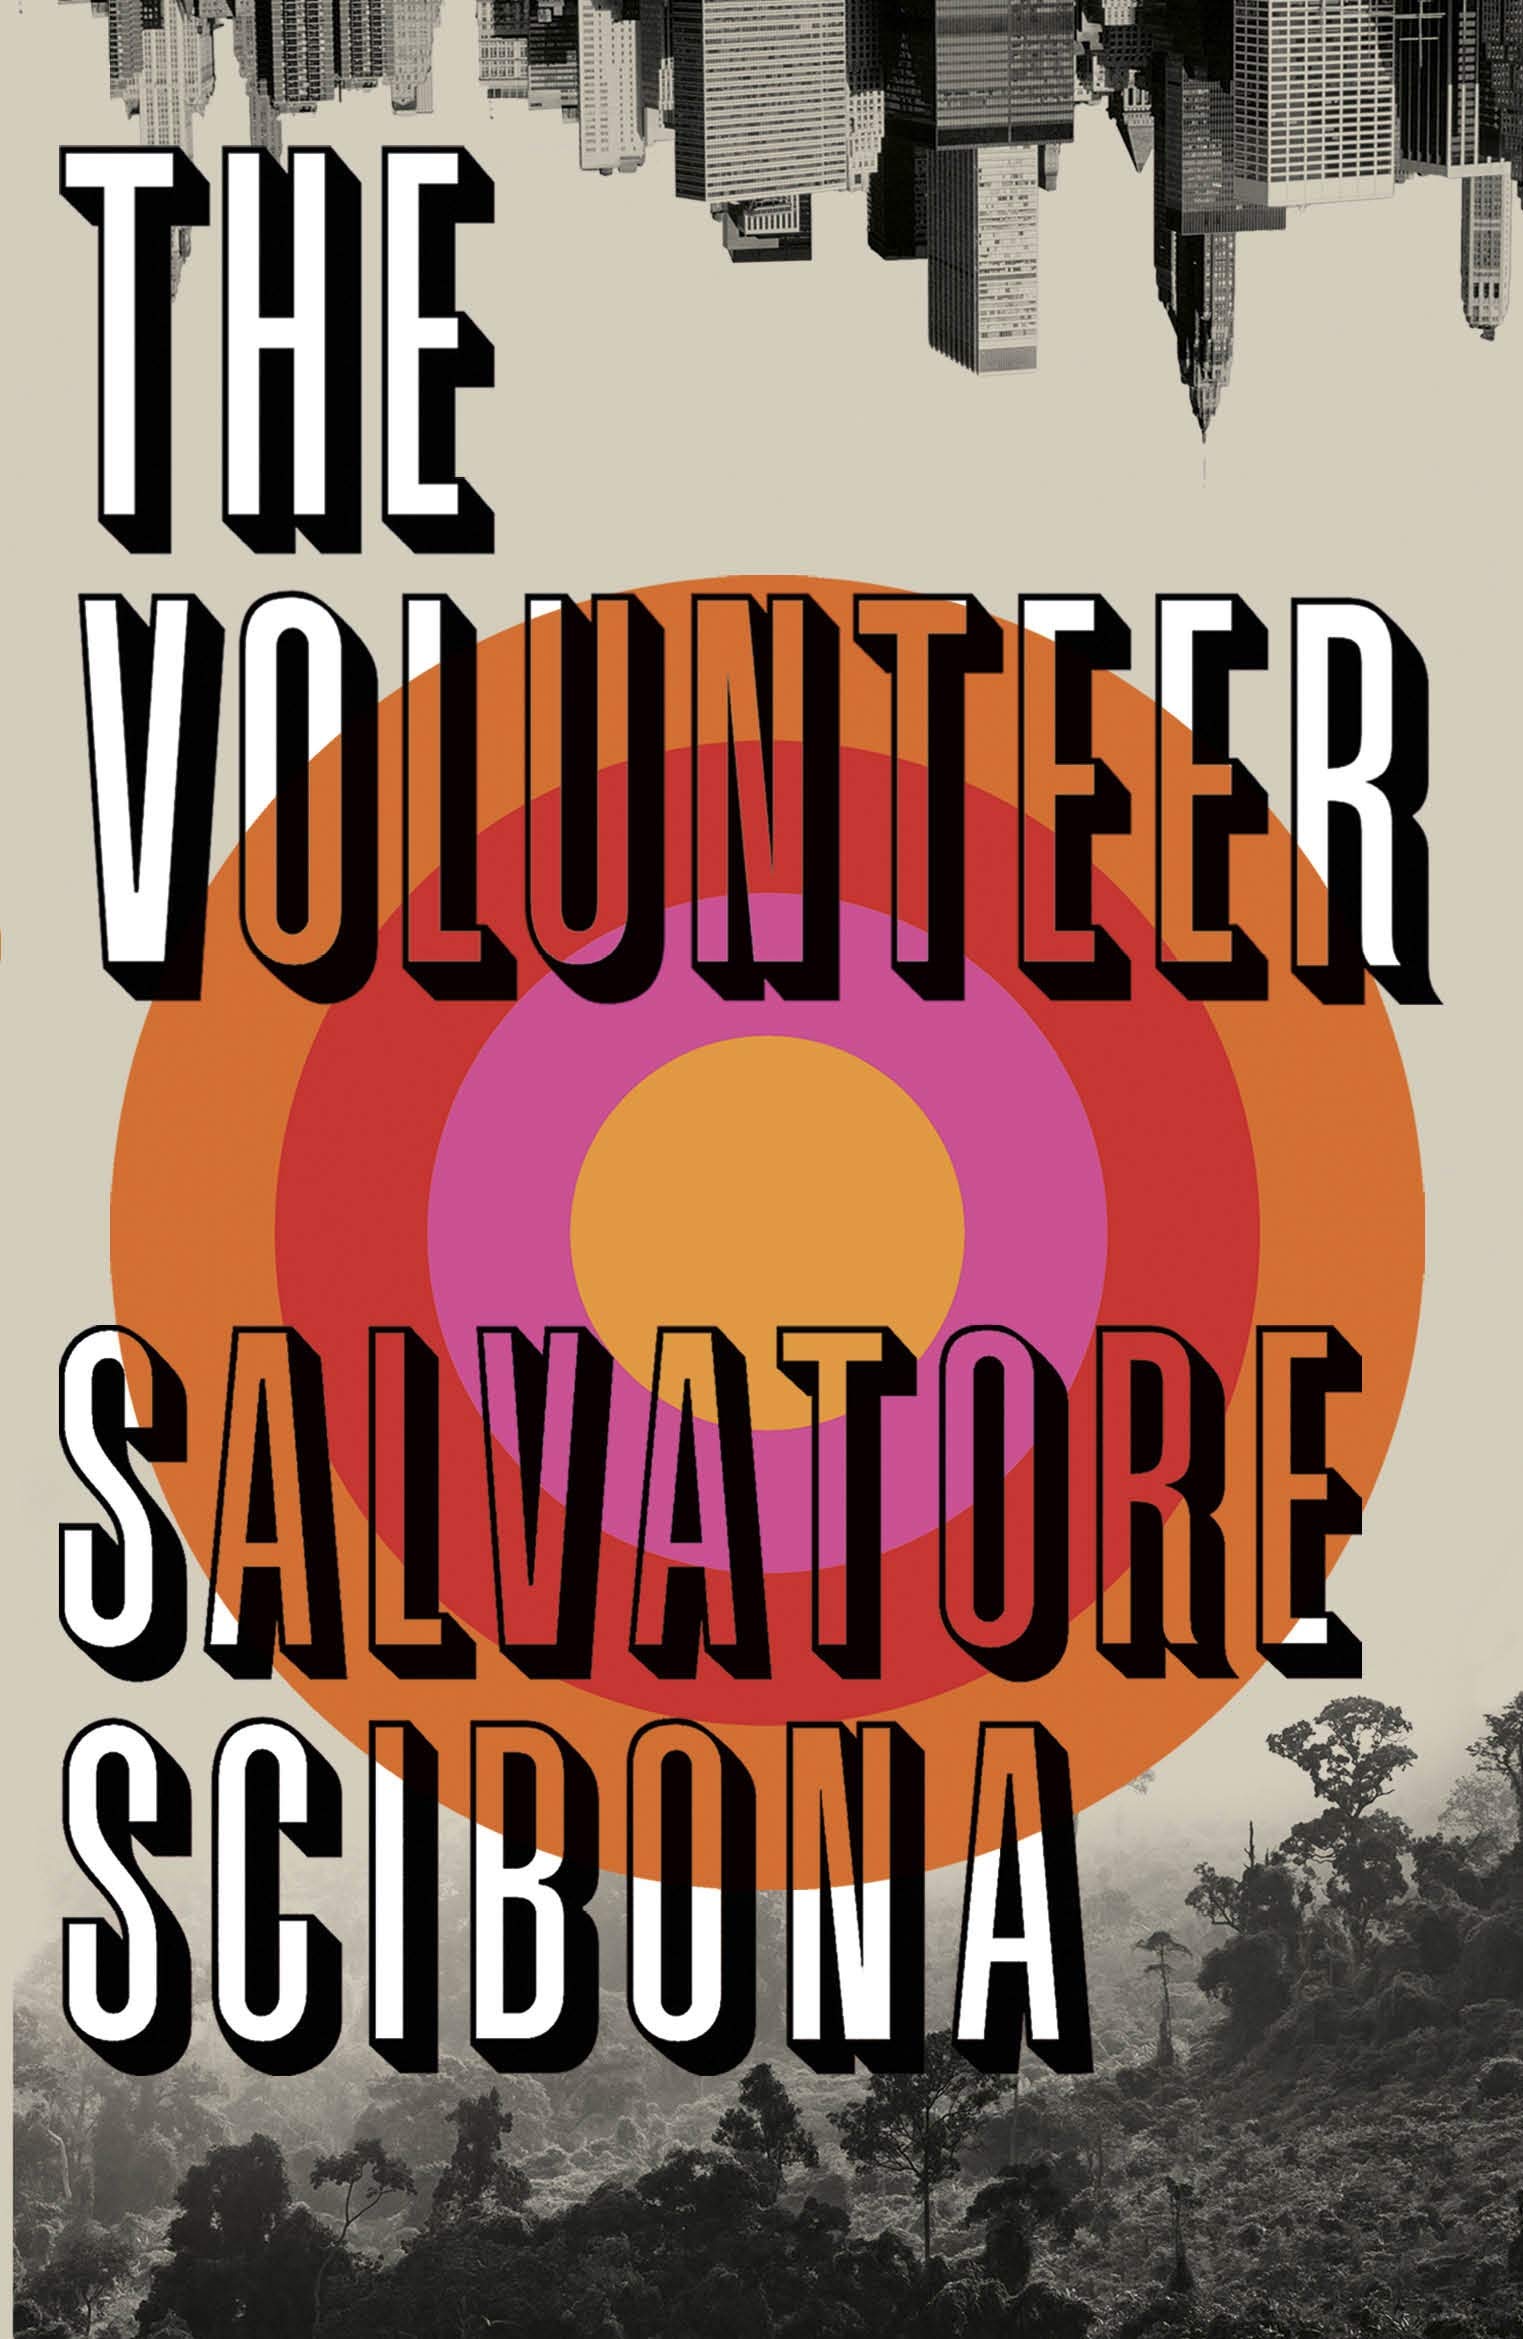 The Volunteer | Salvatore Scibona